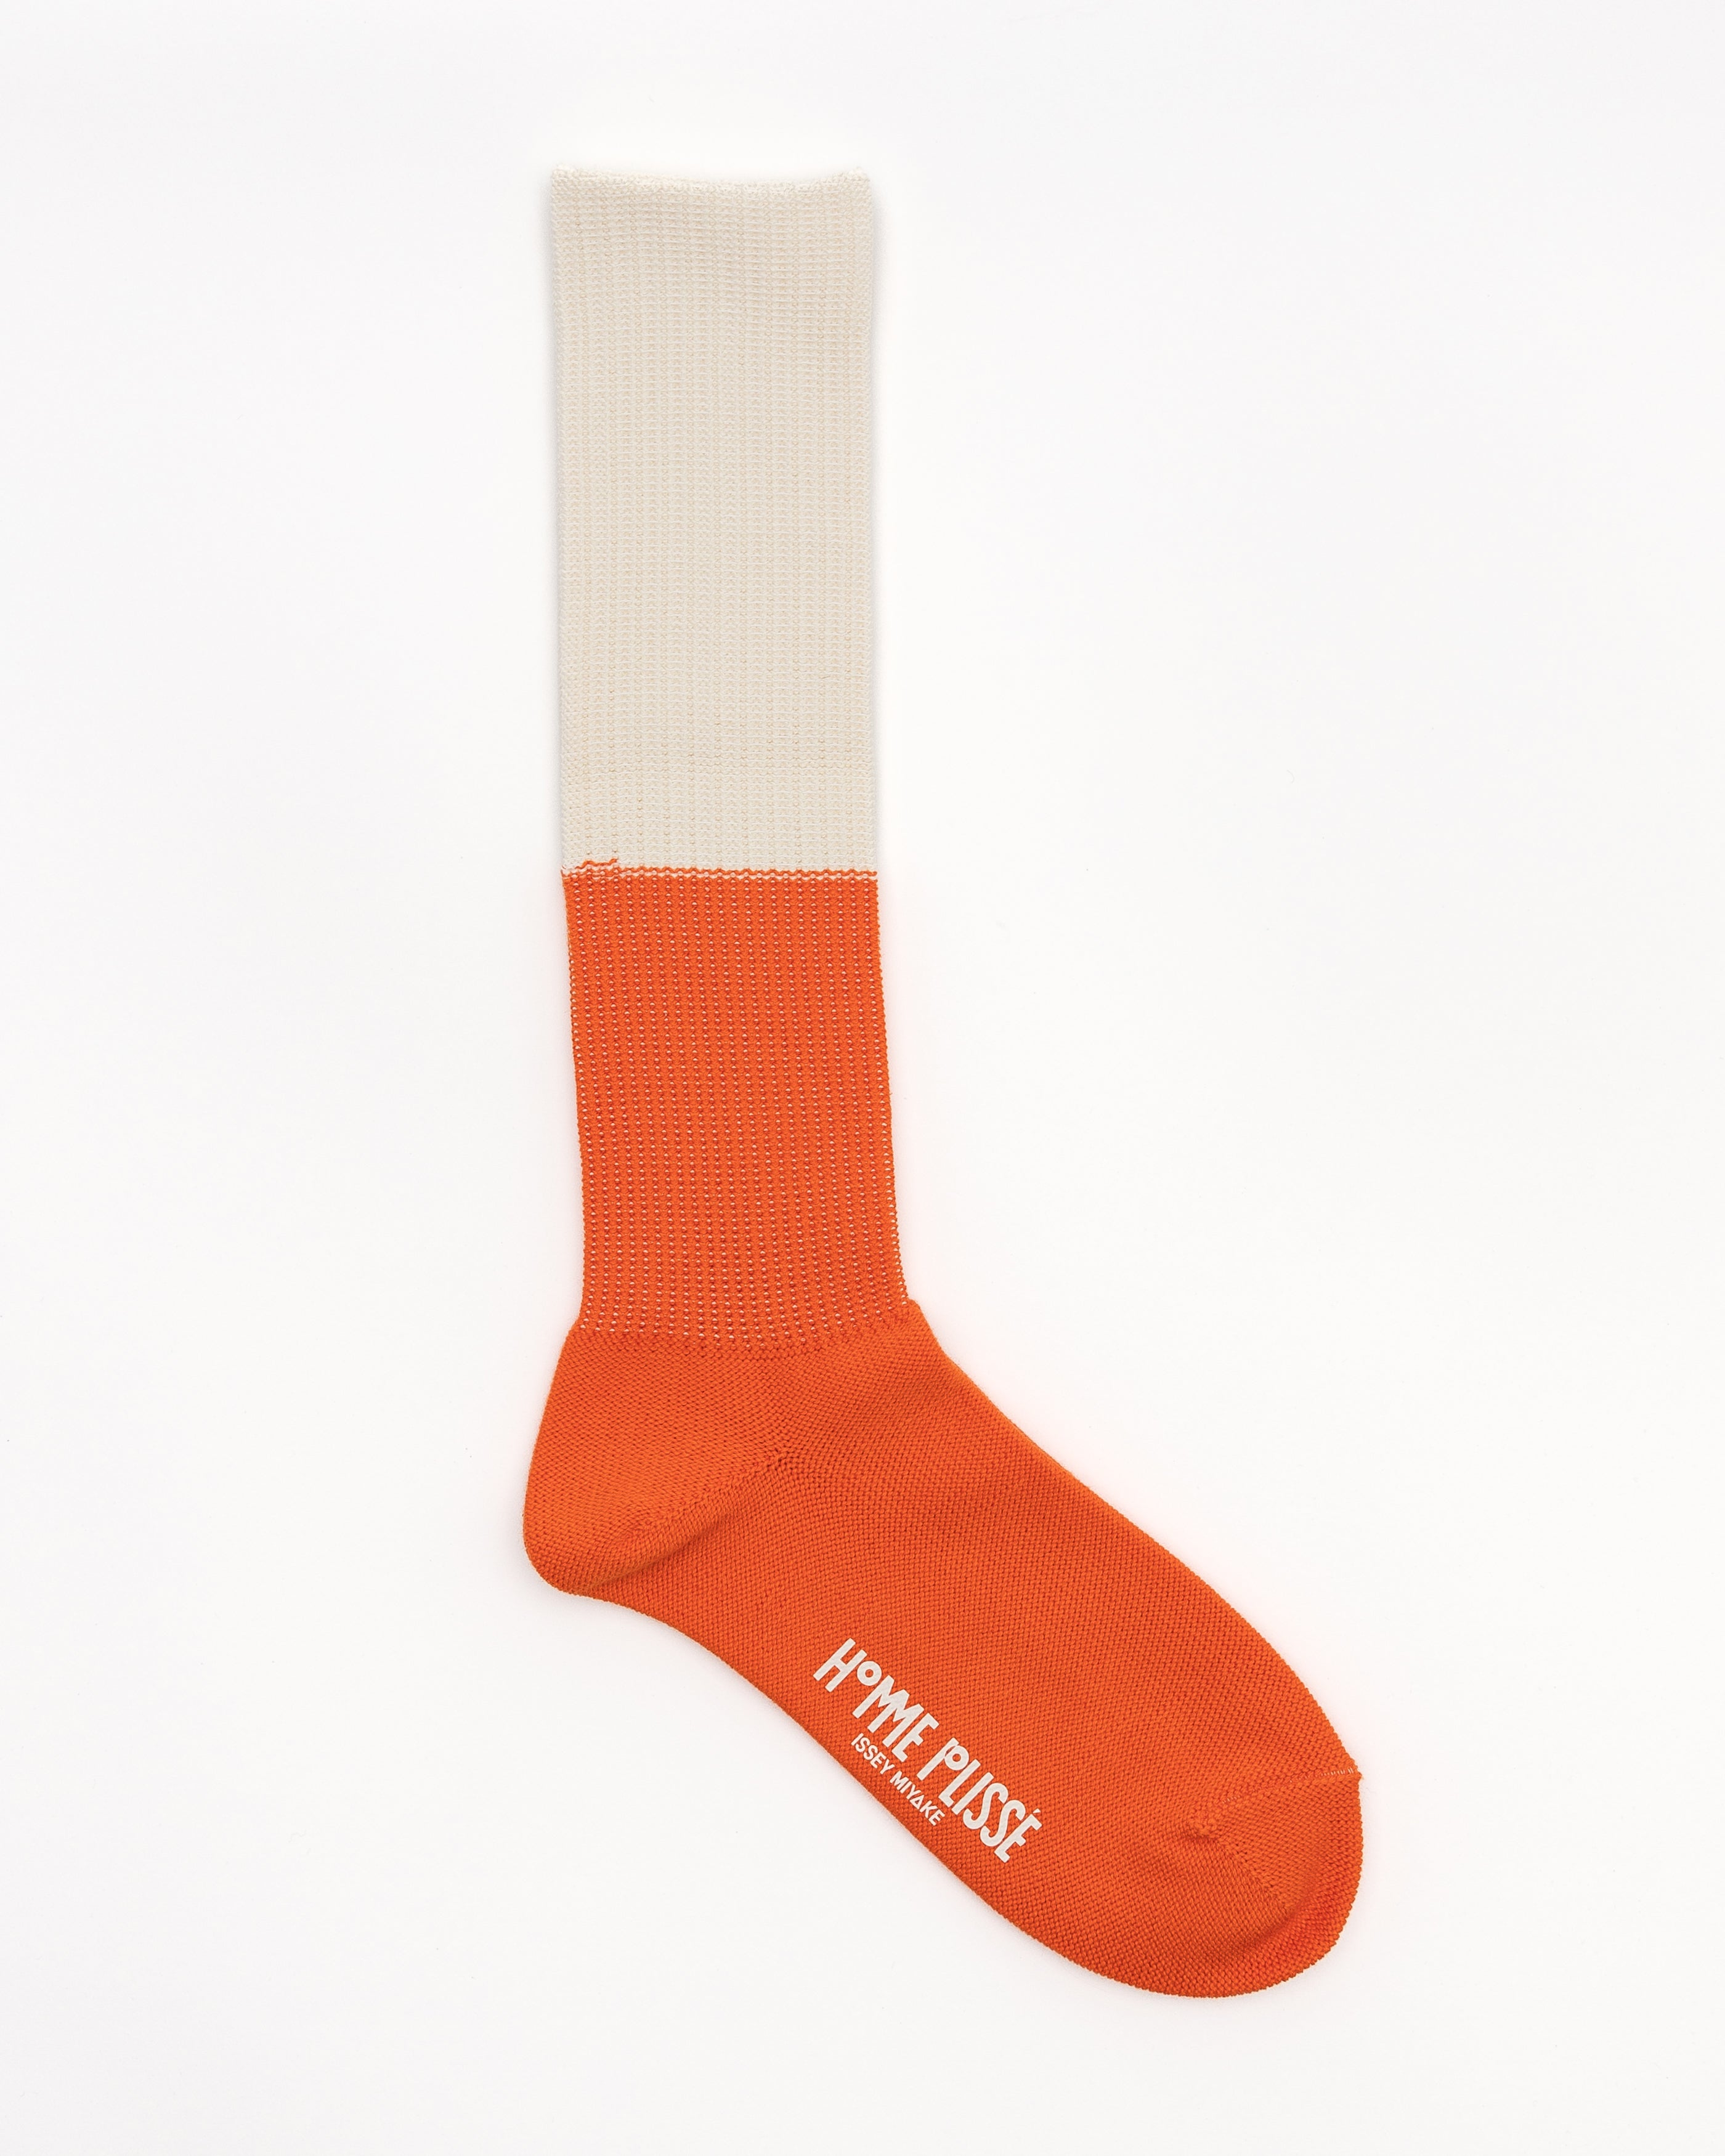 Two Way Socks in Orange